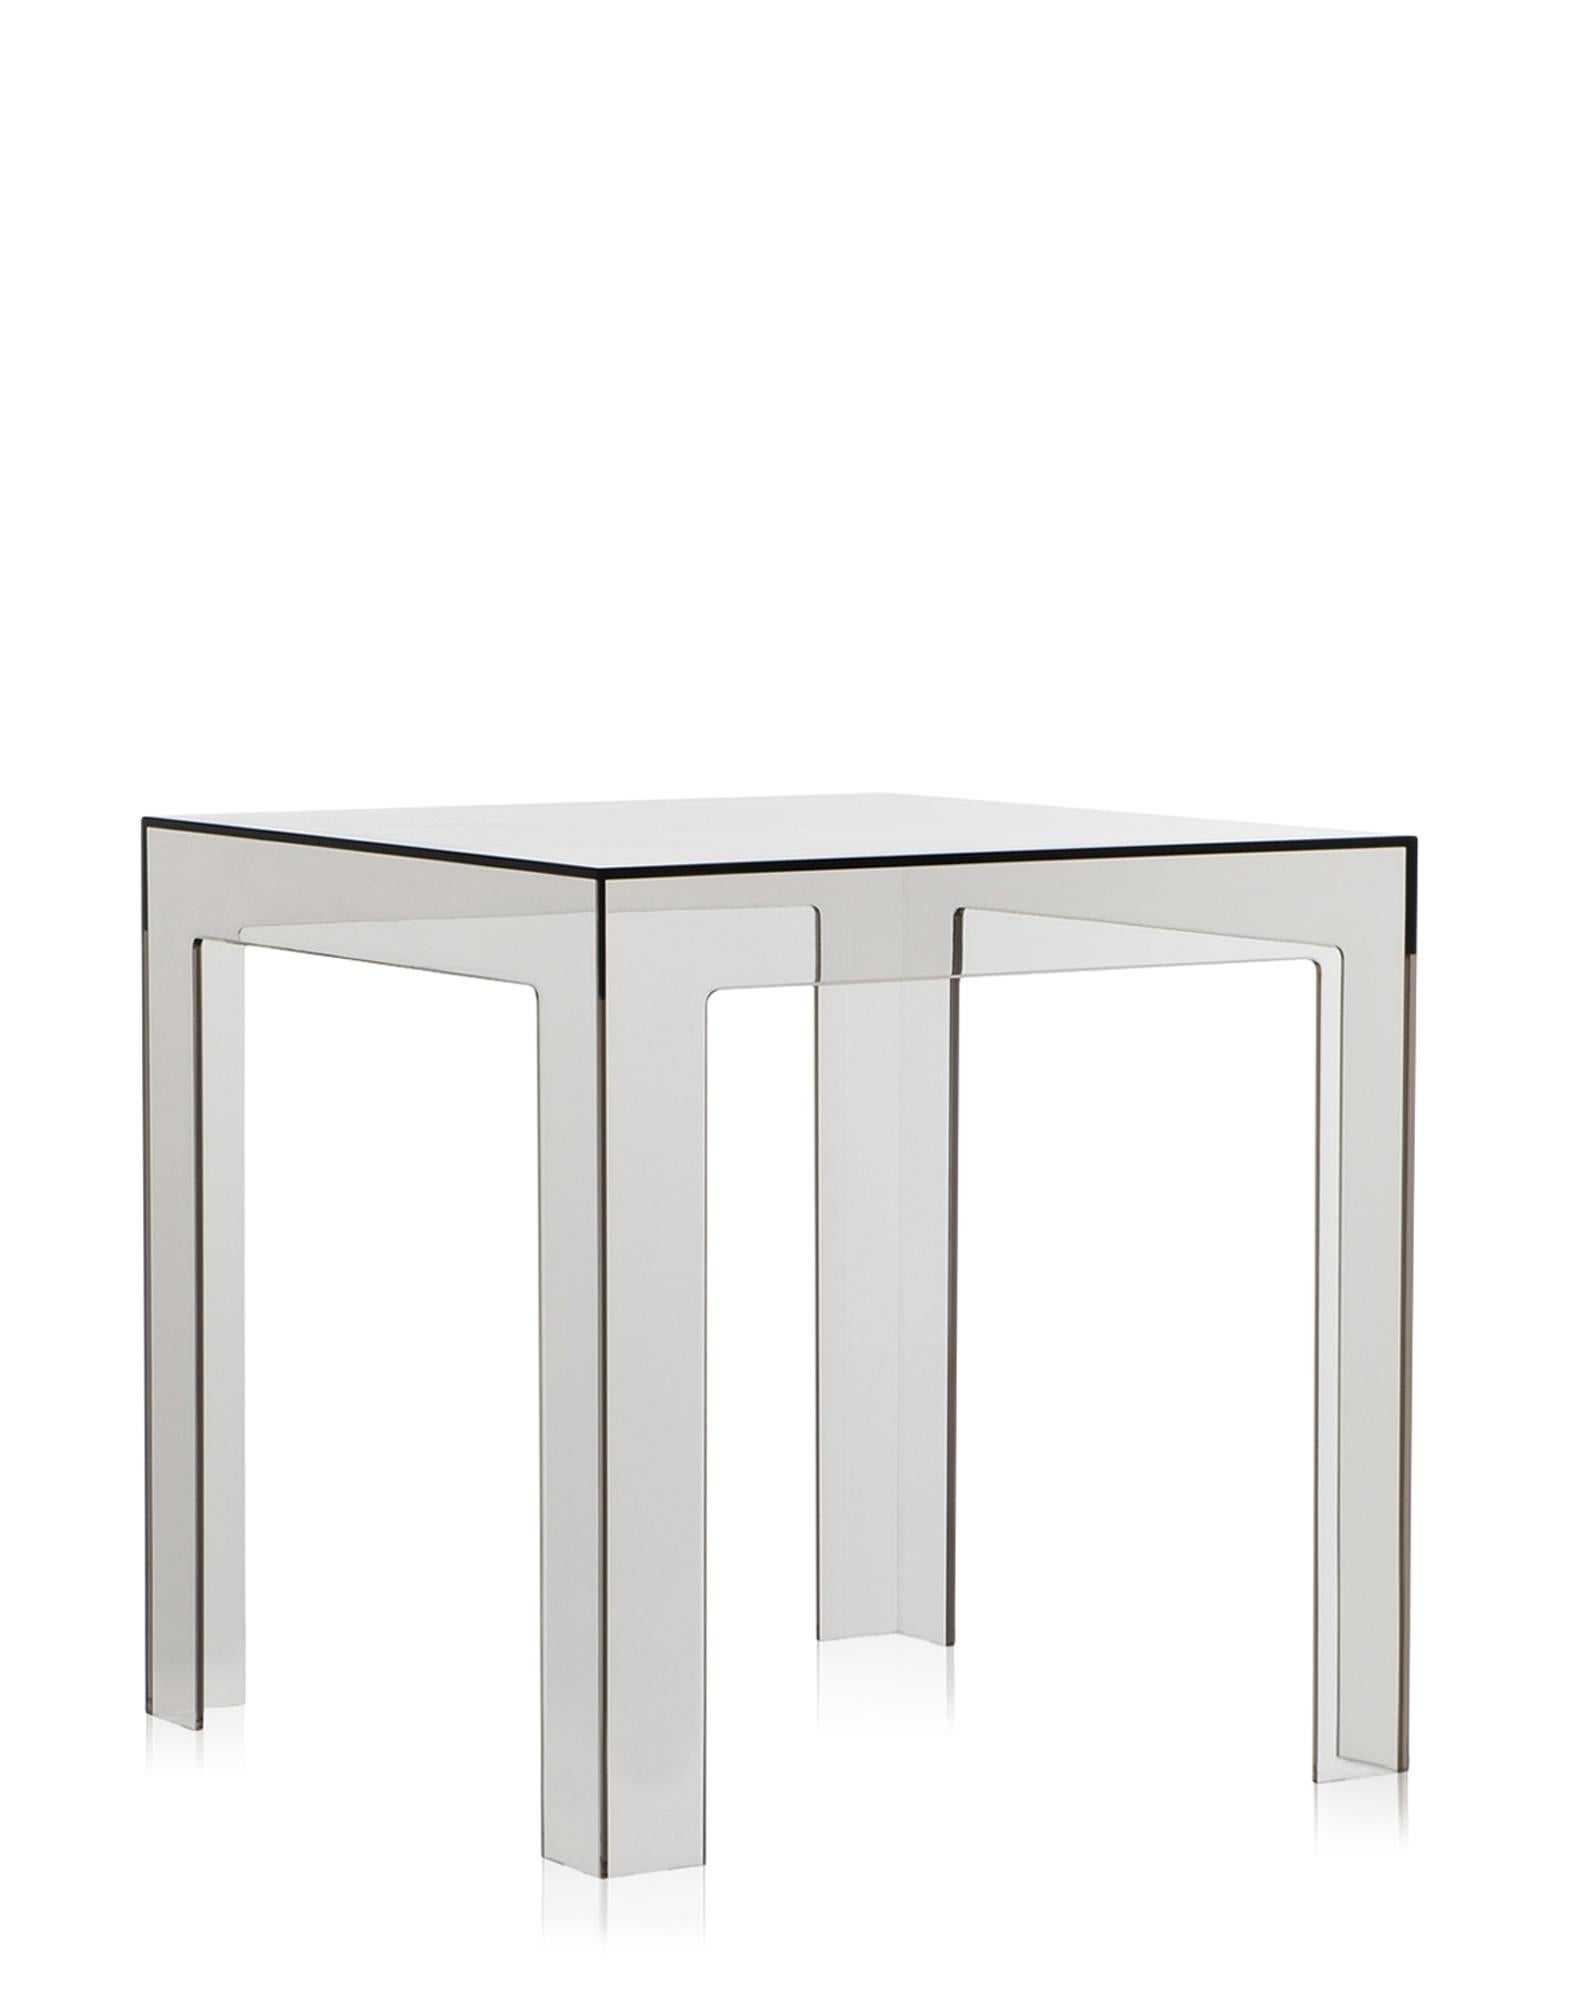 Une petite table d'appoint entièrement transparente aux dimensions parfaites : 40 x 40 x 40 cm. Colorée, pratique, sûre et fonctionnelle, Jolly est une table d'appoint polyvalente et amusante en polycarbonate transparent ou teinté dans la masse.